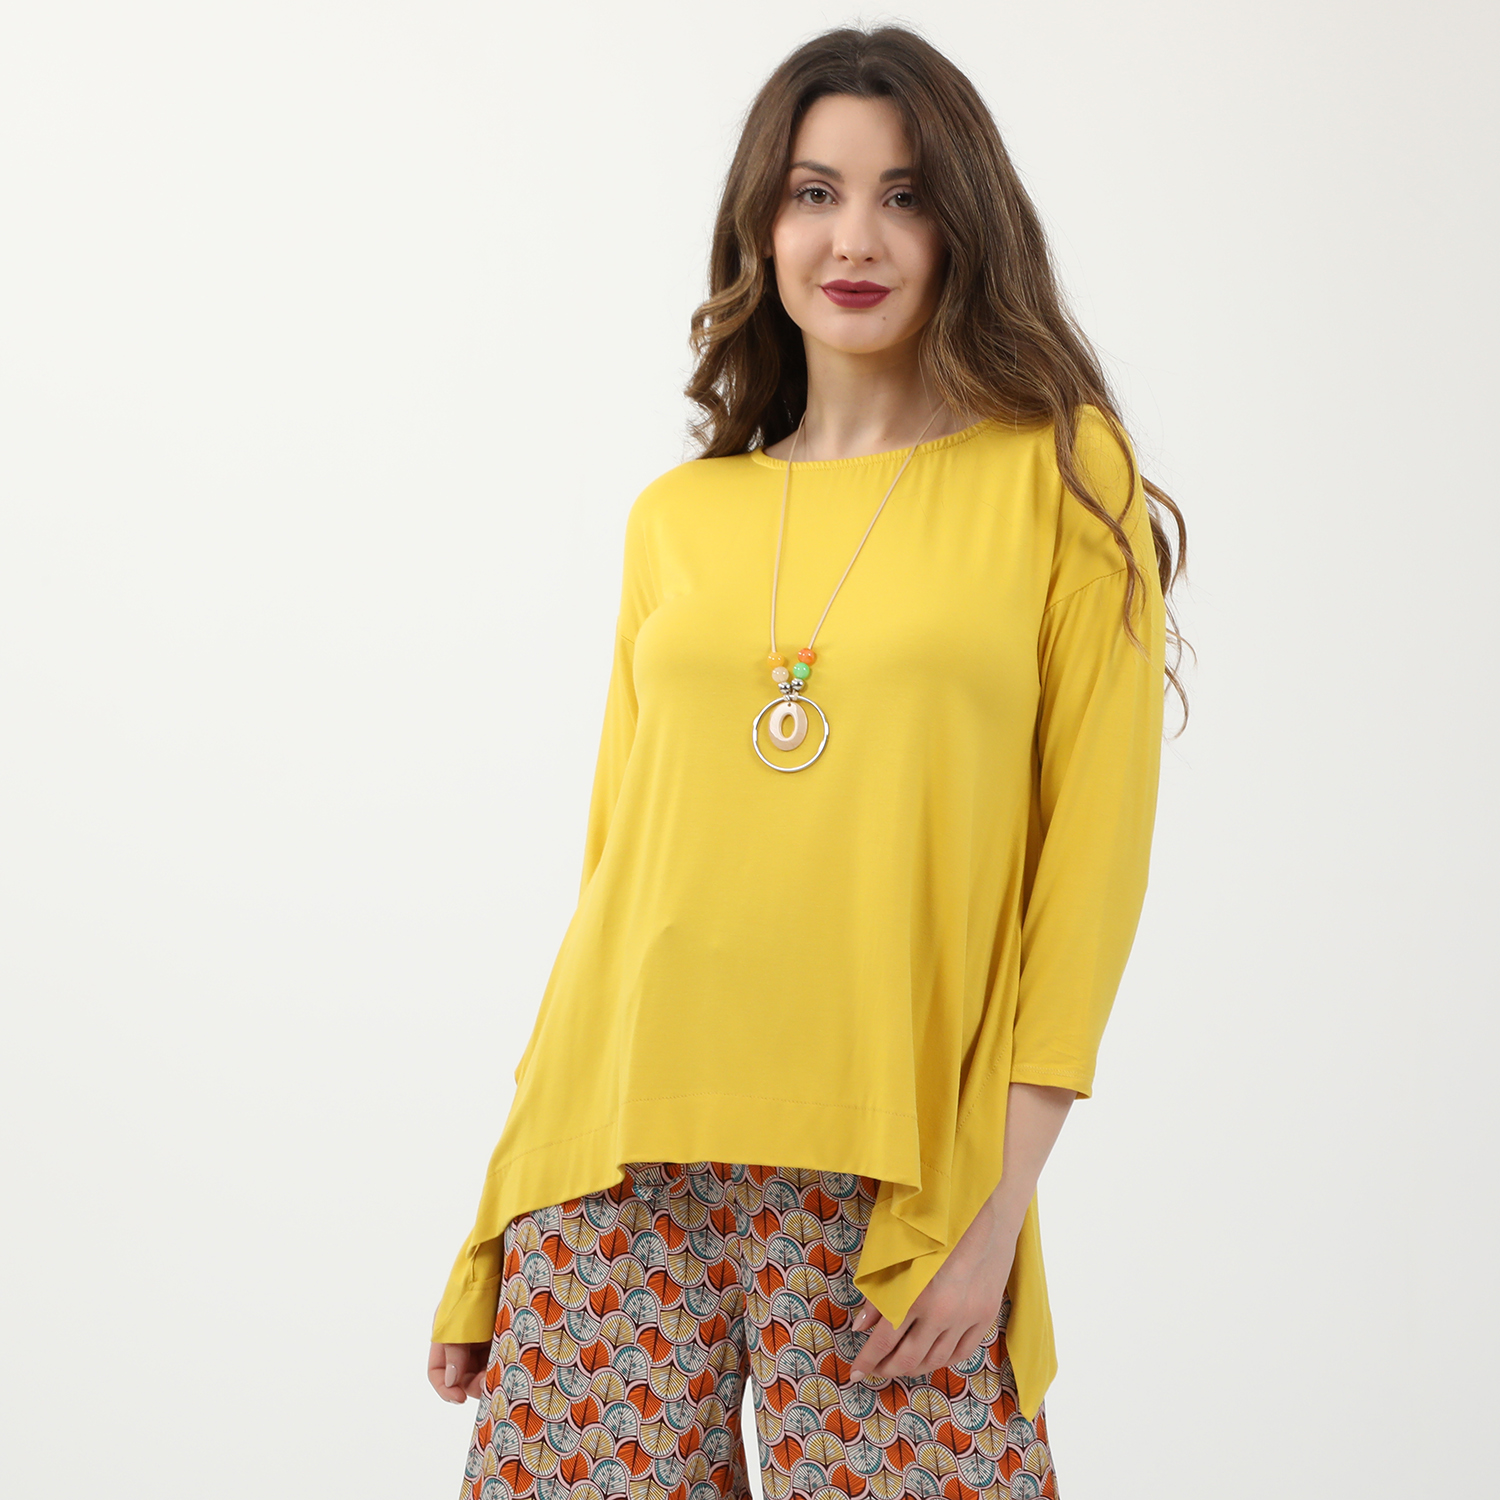 Γυναικεία/Ρούχα/Μπλούζες/Μακρυμάνικες 'ALE - Γυναικεία μακριά μπλούζα και κολιέ 'ALE κίτρινη